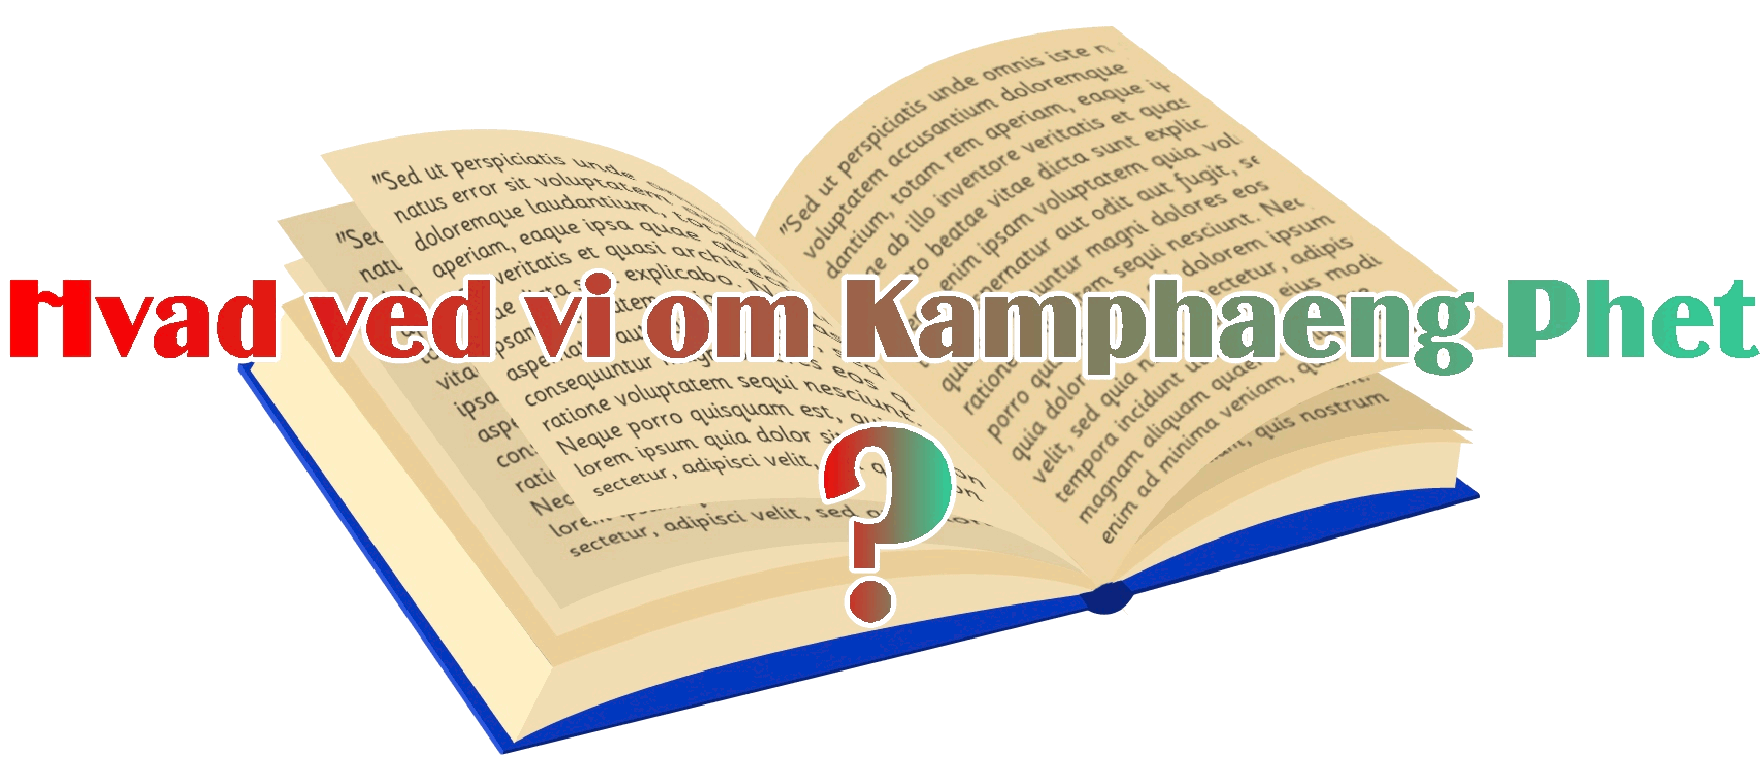 hvad ved vi om Kamphaeng Phet